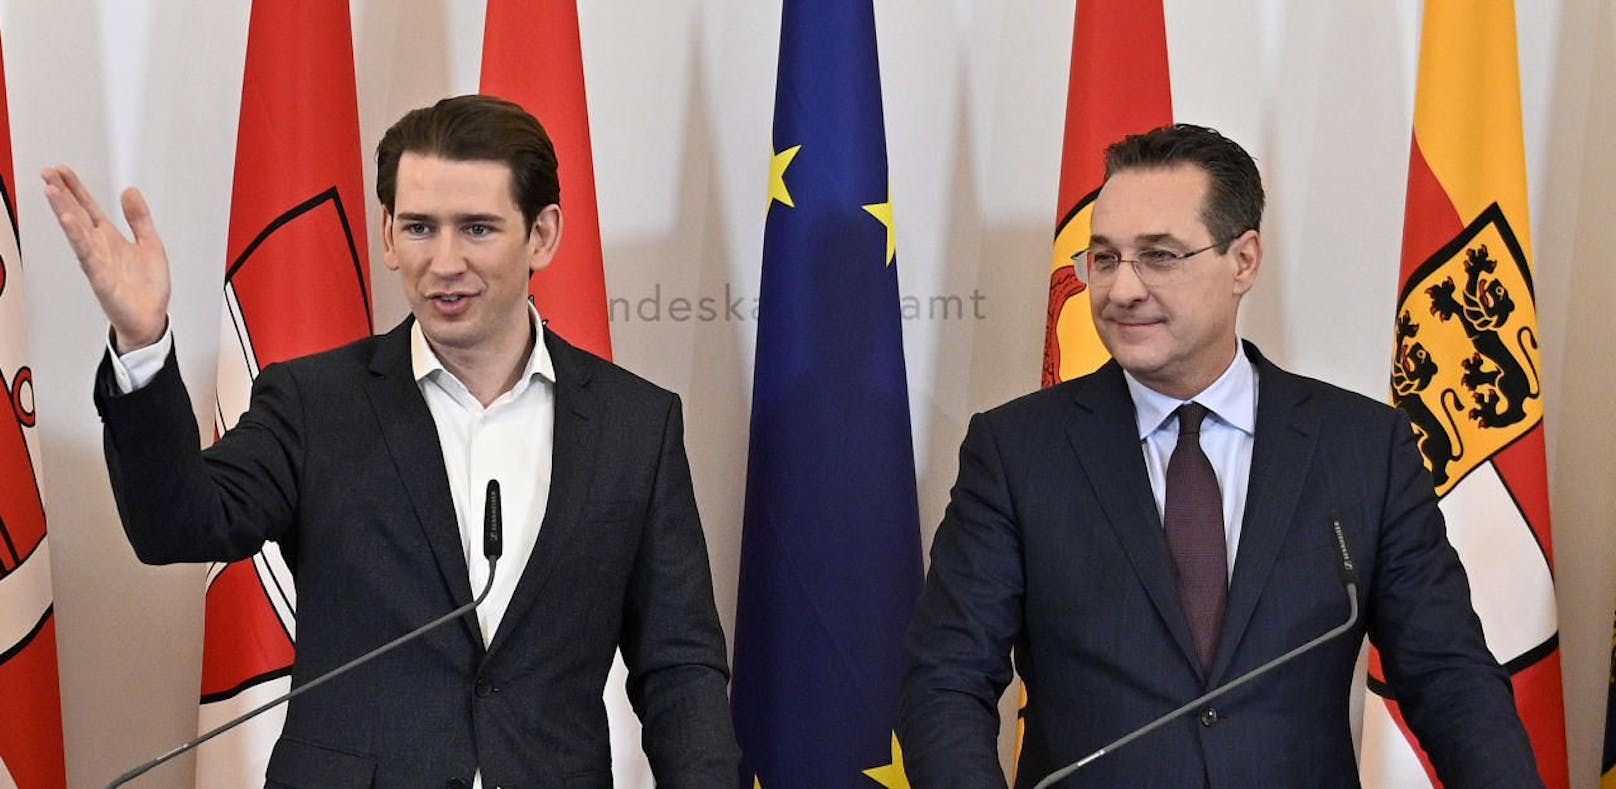 Bundeskanzler Sebastian Kurz (ÖVP) will in der Causa Doppelpässe erst die weiteren Handlungsmöglichkeiten Österreichs prüfen lassen.